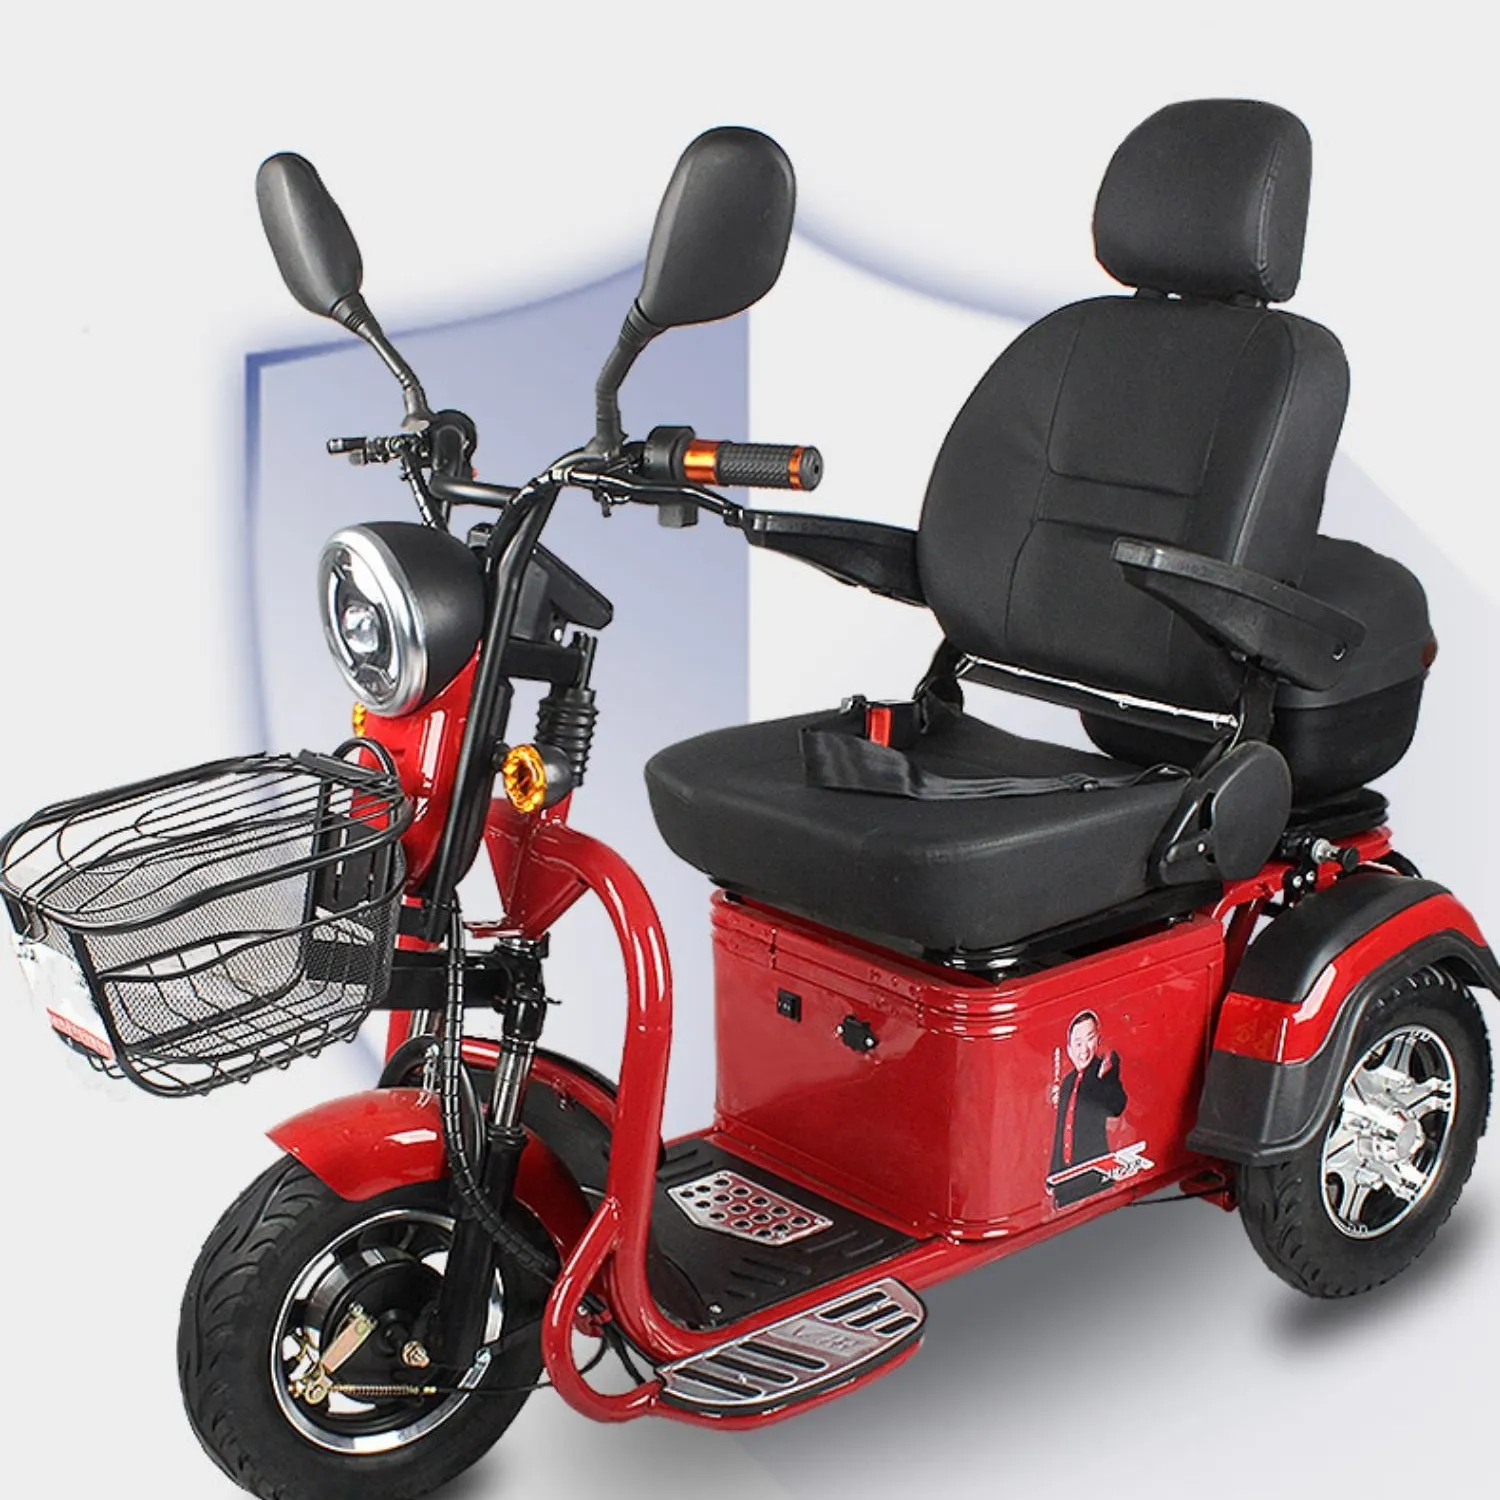 Elektrikli Scooter karbon çelik çerçeve dayanıklı üç tekerlekli bisiklet scooterback dinlenme ayarlanabilir sandalye hareketlilik scooter için